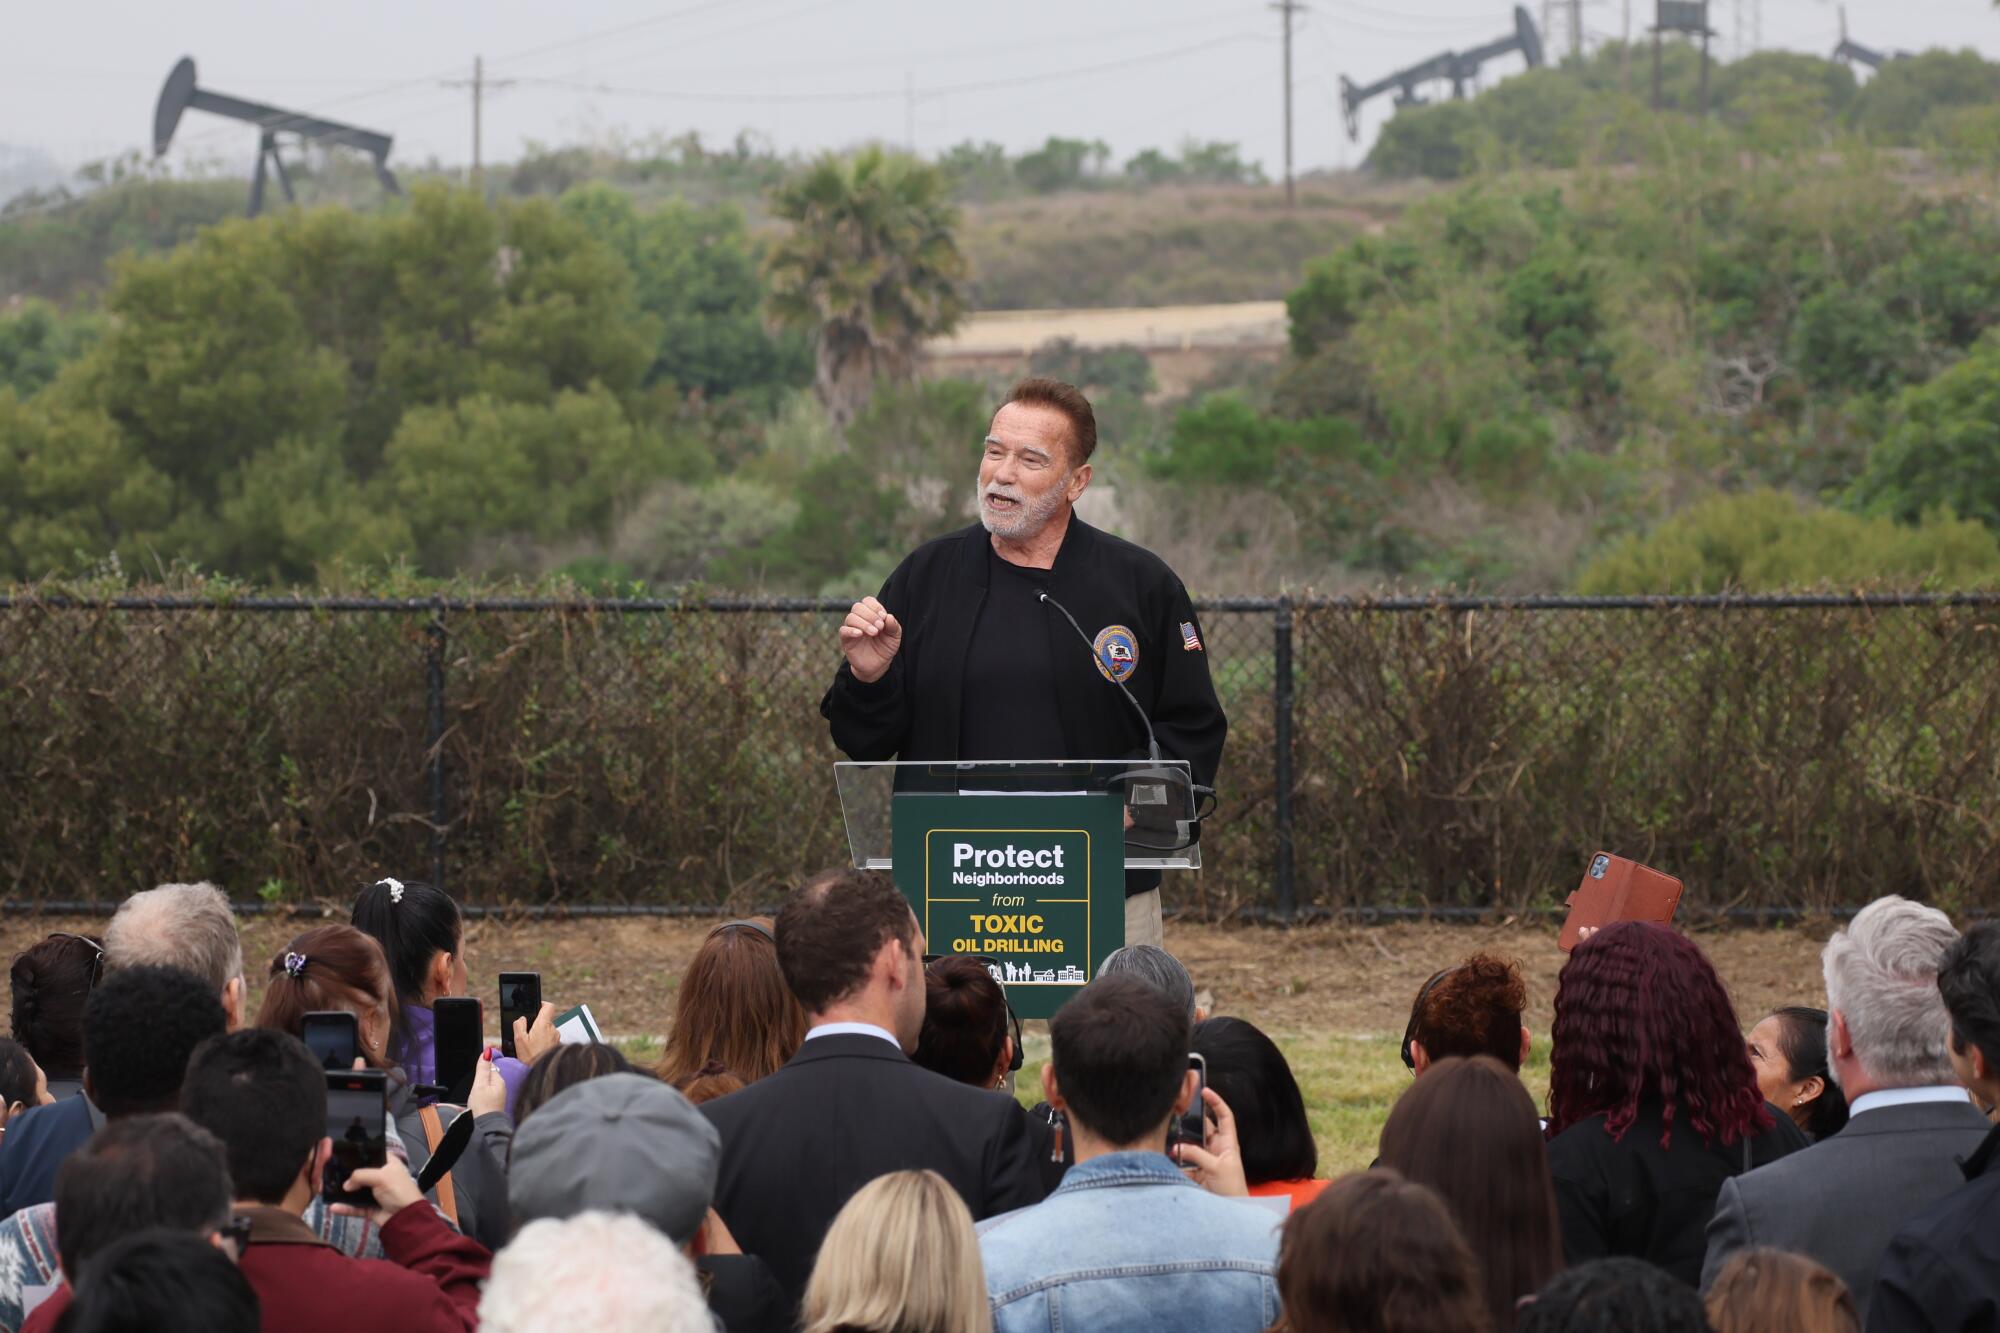 L'ancien gouverneur de Californie, Arnold Schwarzenegger, s'exprime à l'extérieur tandis que les pompes à pétrole sont en arrière-plan.